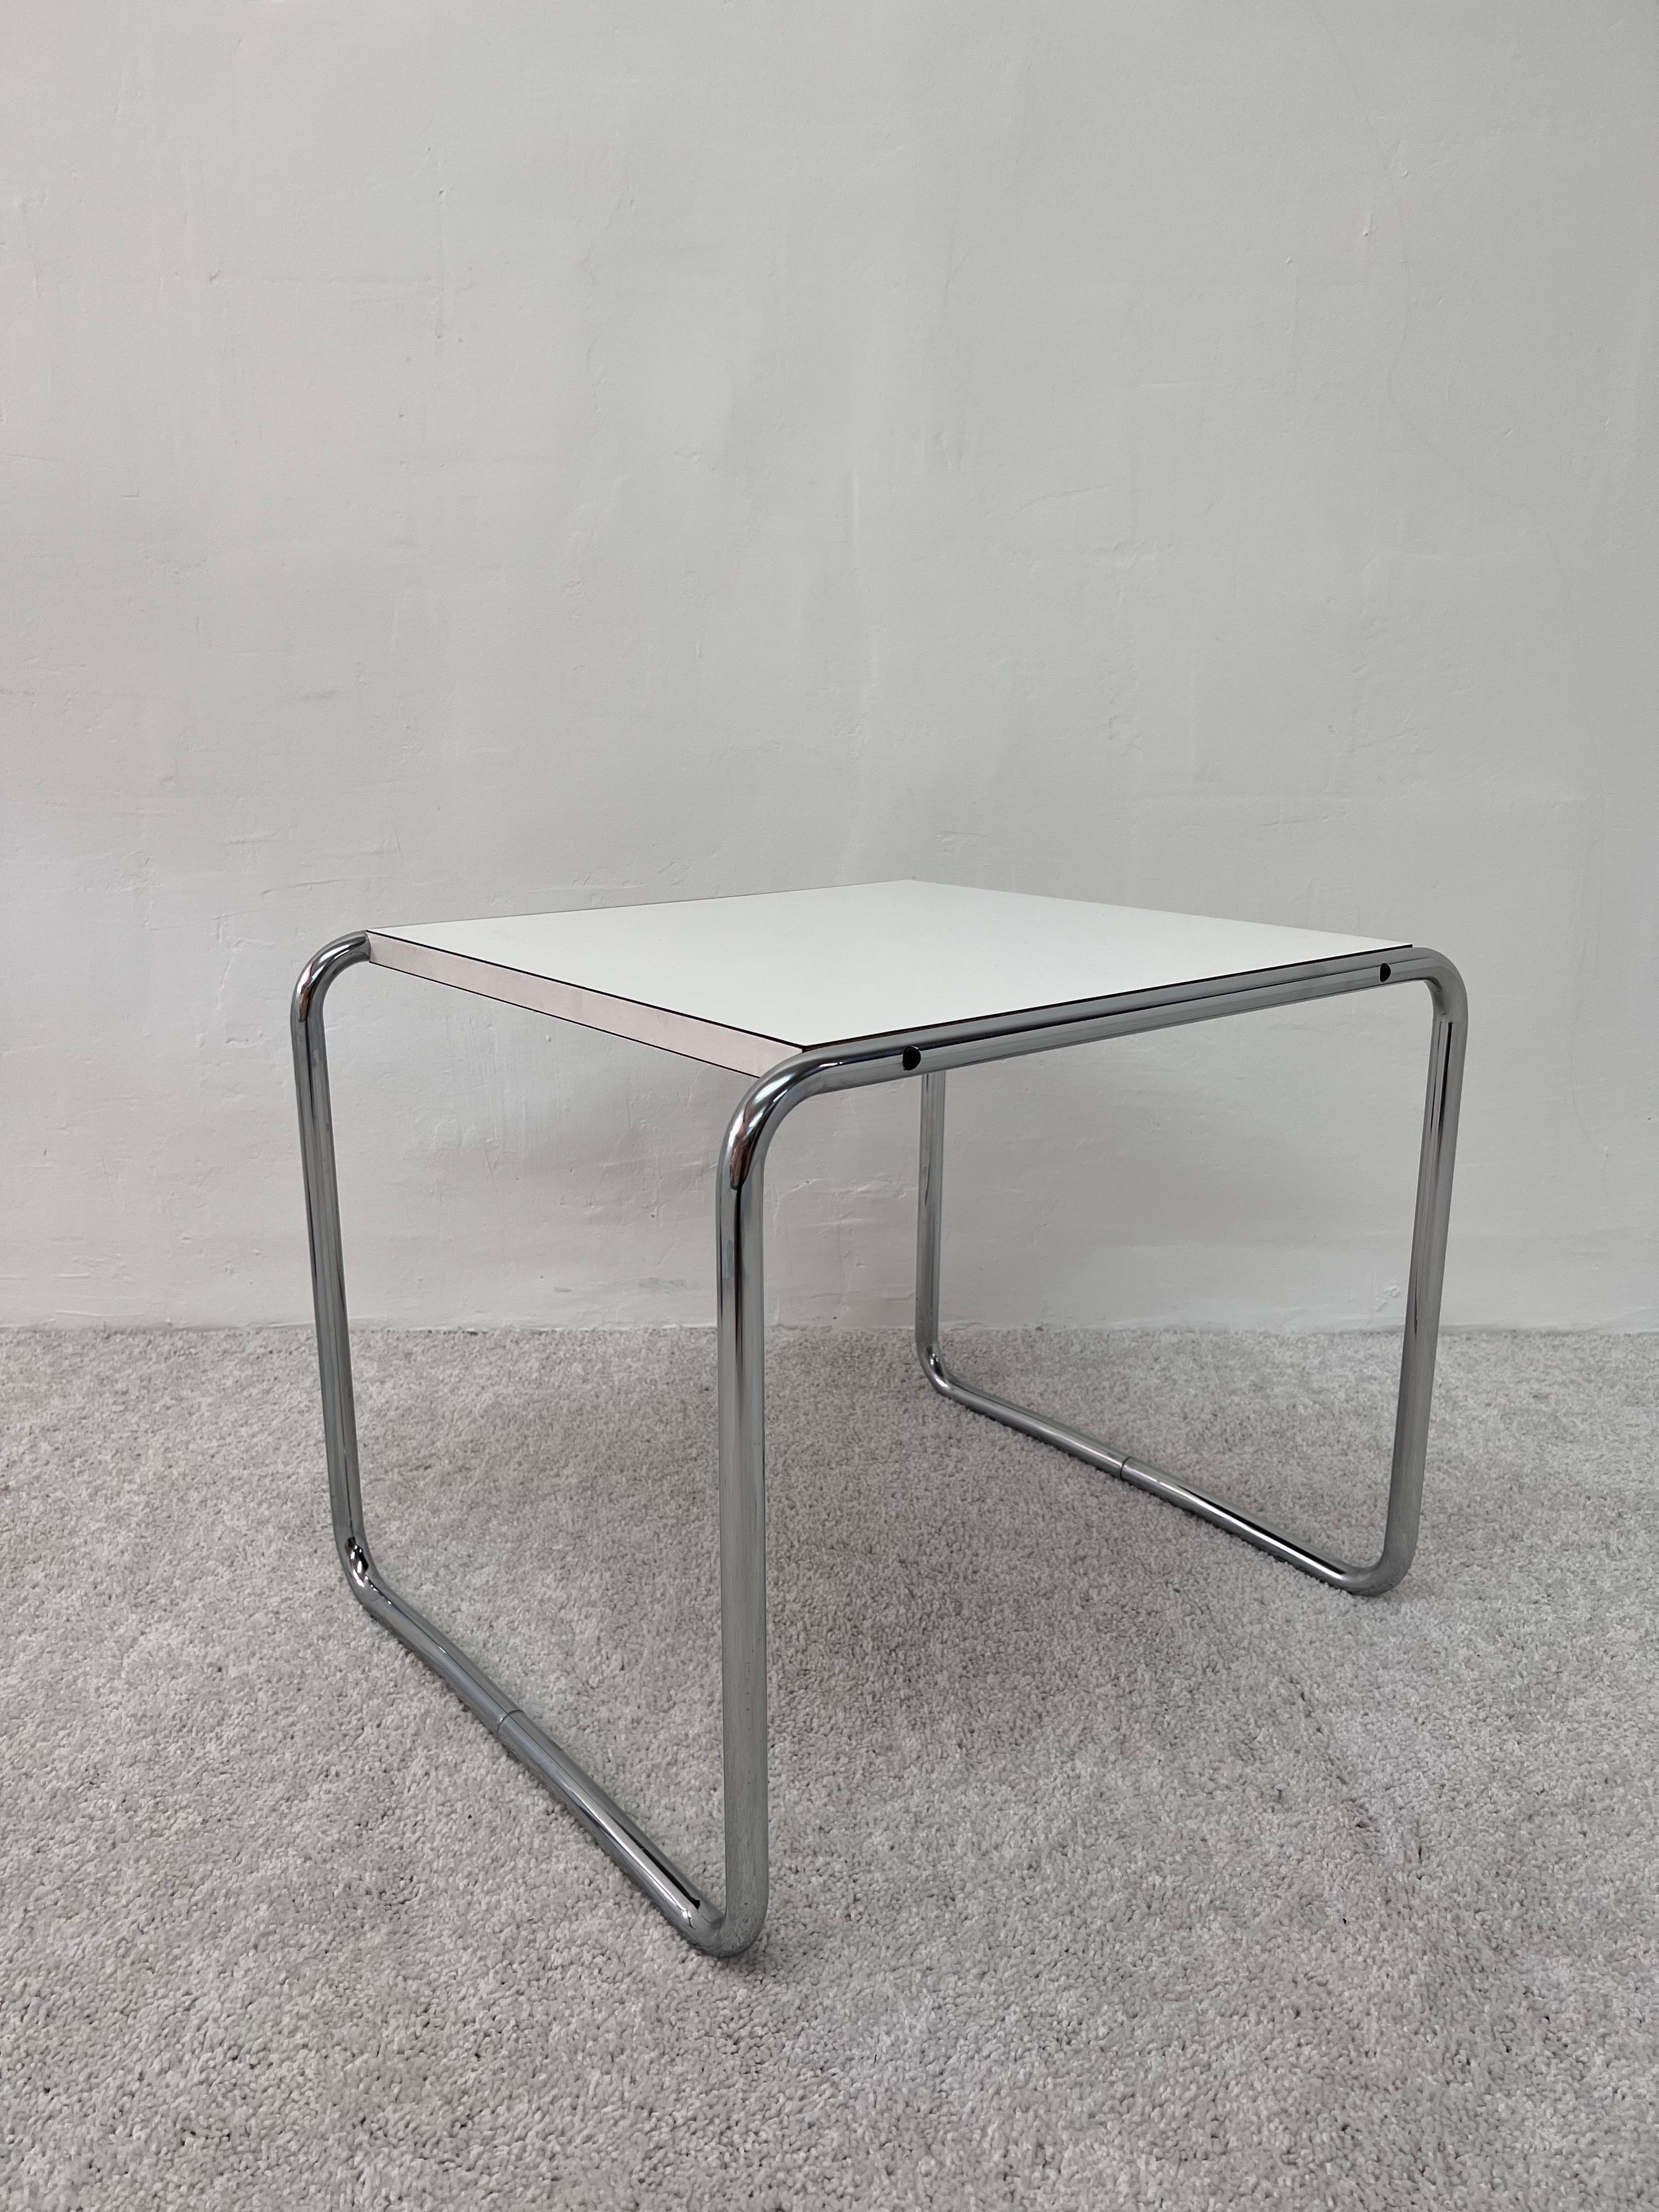 Italian Marcel Breuer “Laccio” Chrome and Laminate Side Tables, 1960s